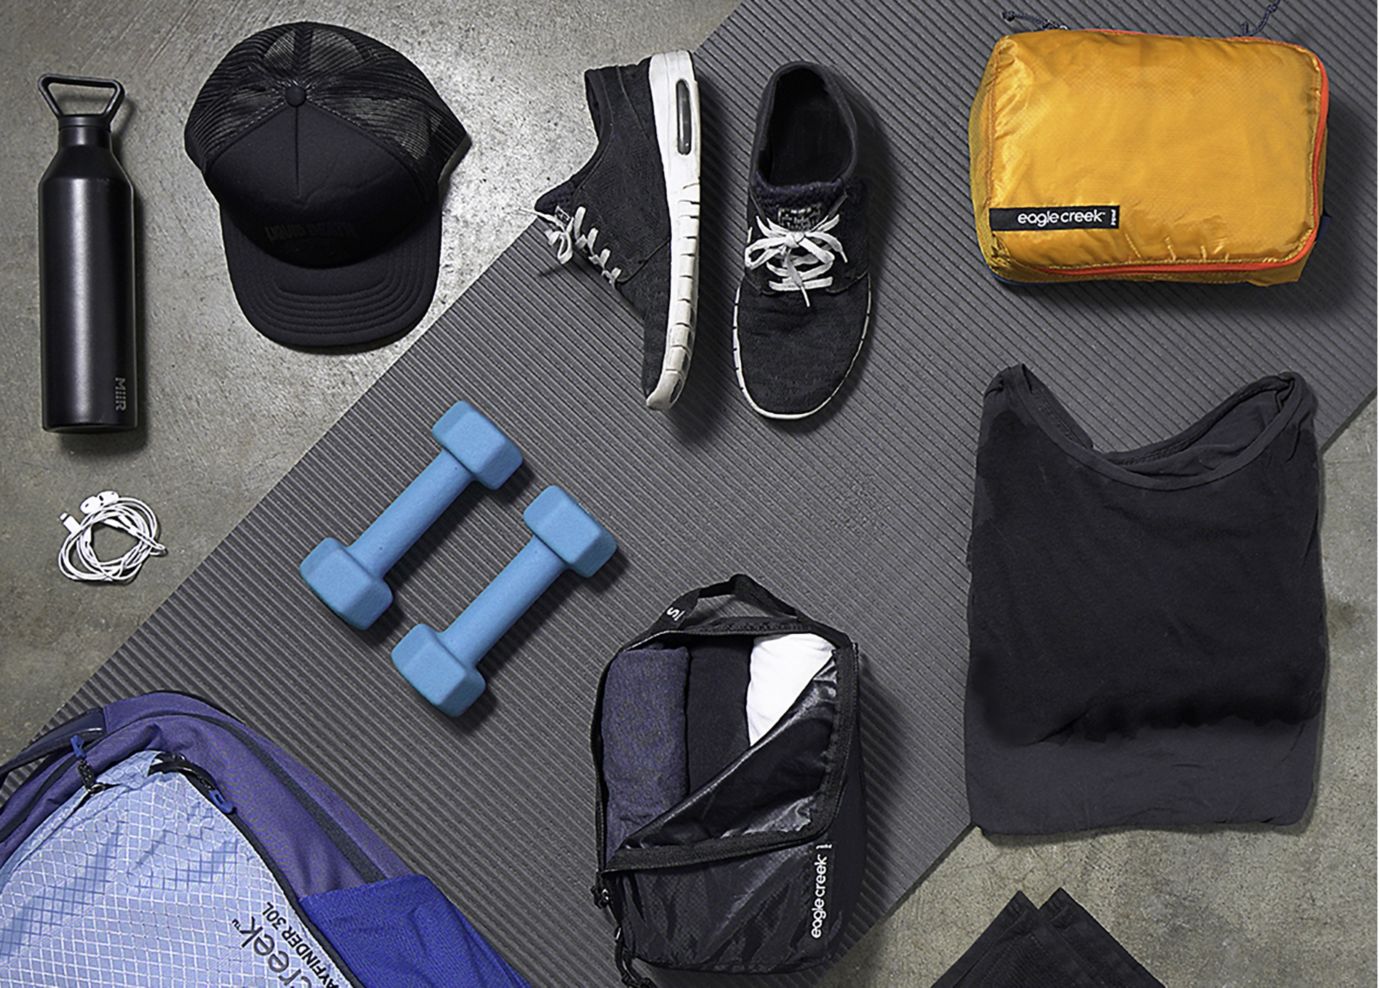 Gym Bag Essentials for Men